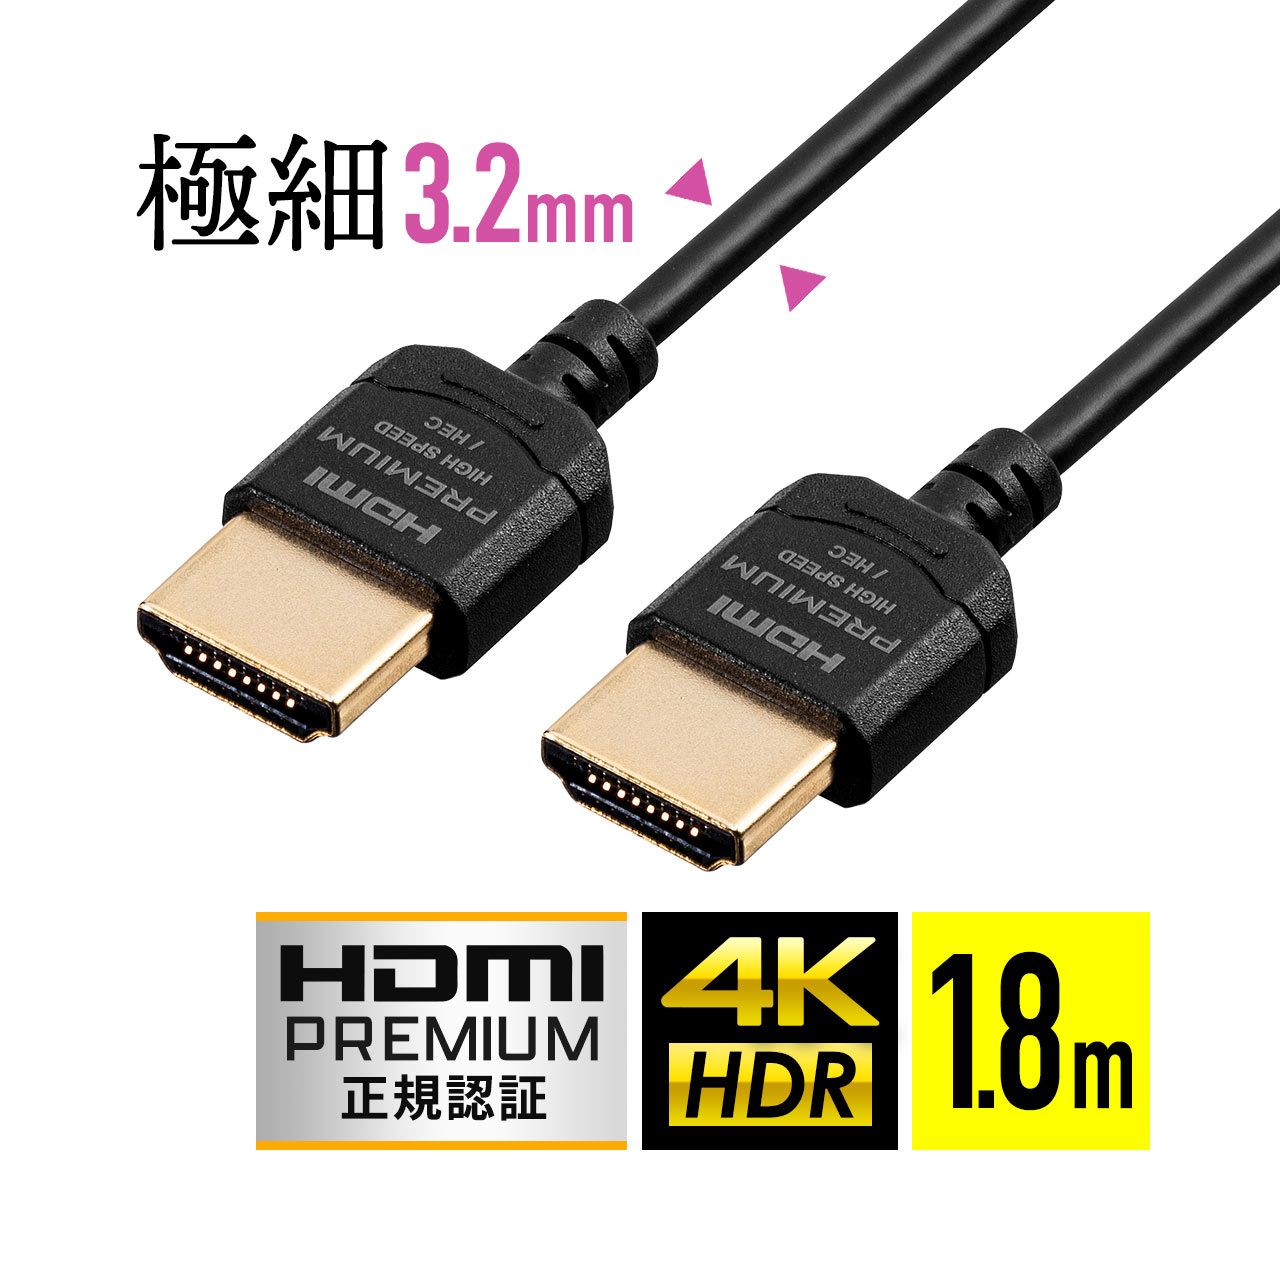 500-HD026-18 サンワダイレクト限定品 ネコポス専用 送料無料対象品 HDMIケーブル 1.8m プレミアム スーパースリムタイプ HDMI認証取得品 永遠の定番 スリムコネクタ 60Hz ご予約品 4K ケーブル直径約3.2mm Premium 18Gbps HDR対応